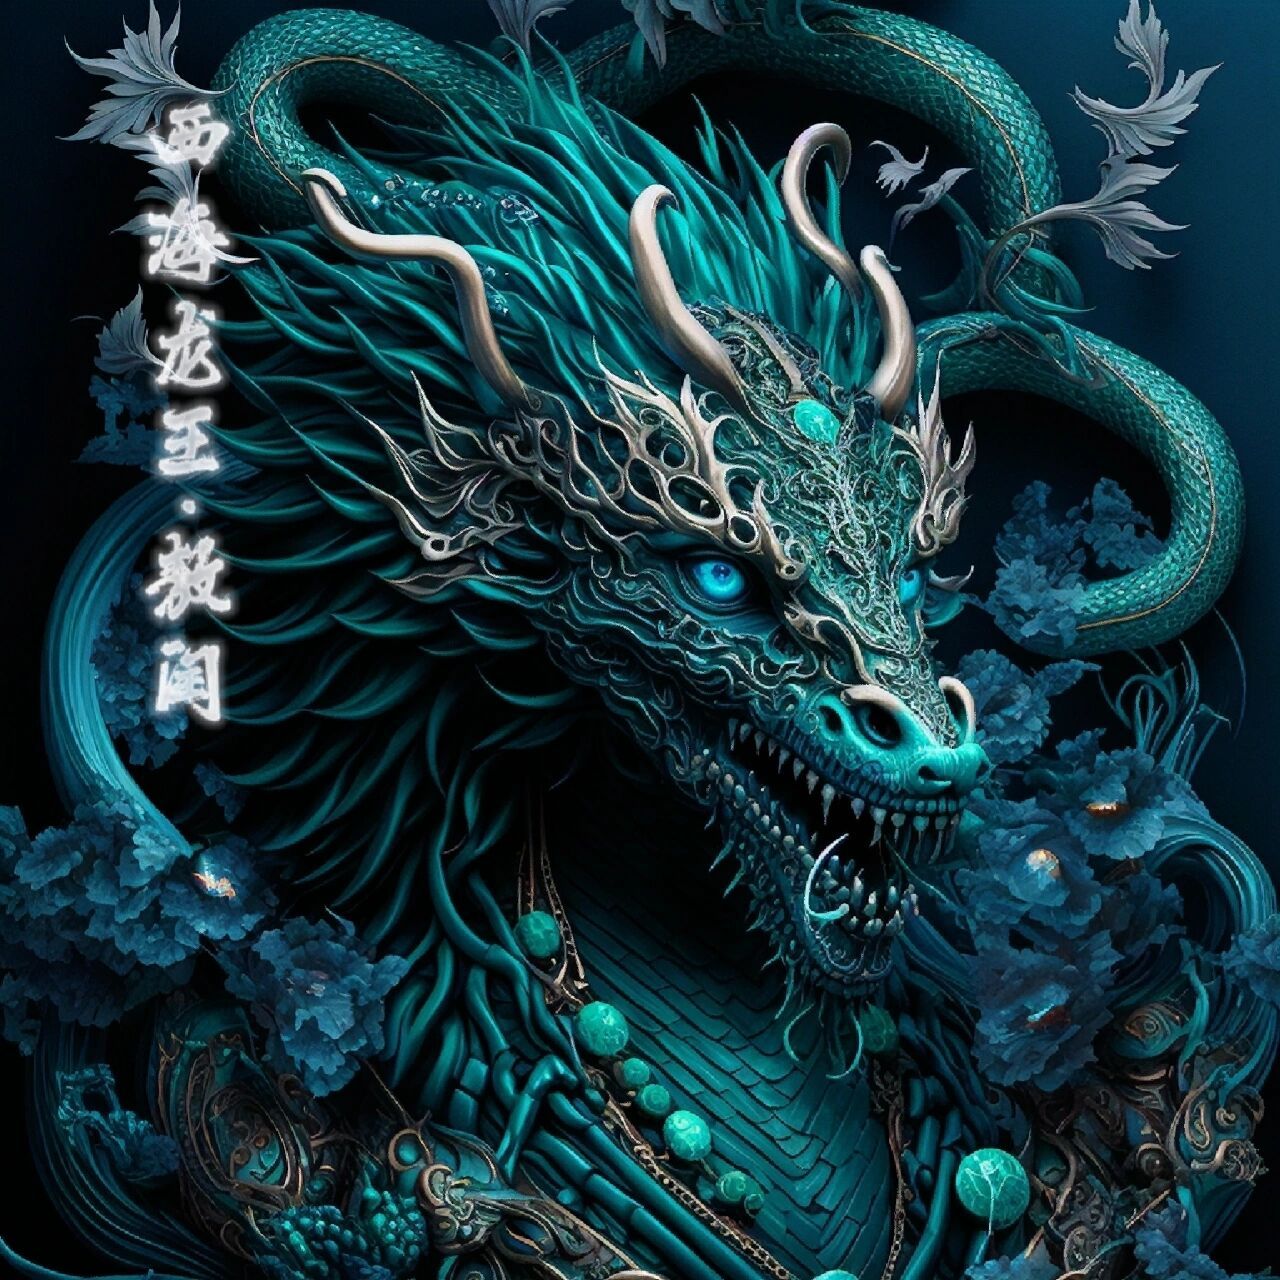 四海皆神明之四海龙王 四海龙王是中国民间所敬之神